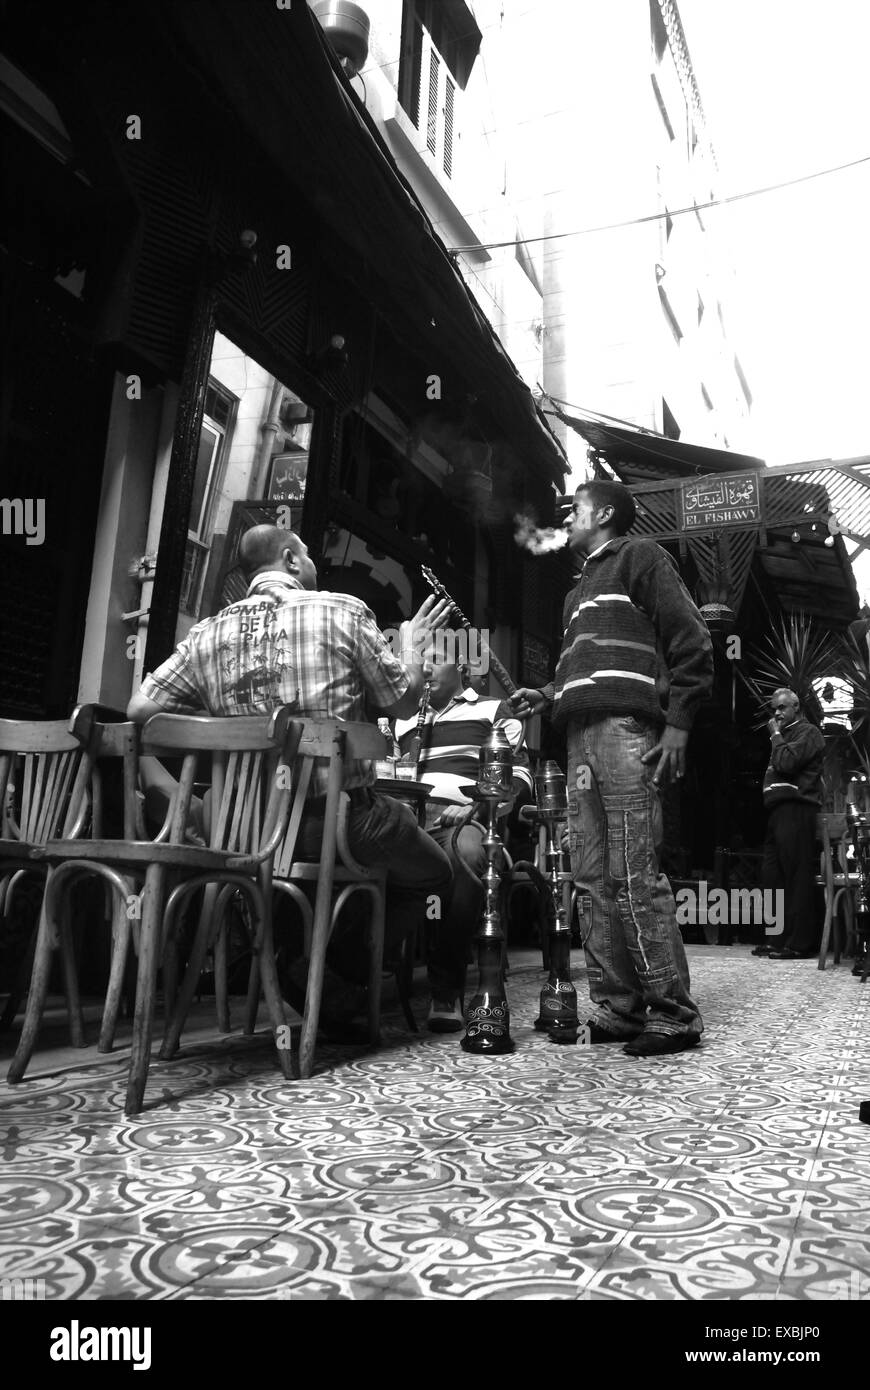 Street cafe, Khan El Khalili Bazaar, Cairo Stock Photo